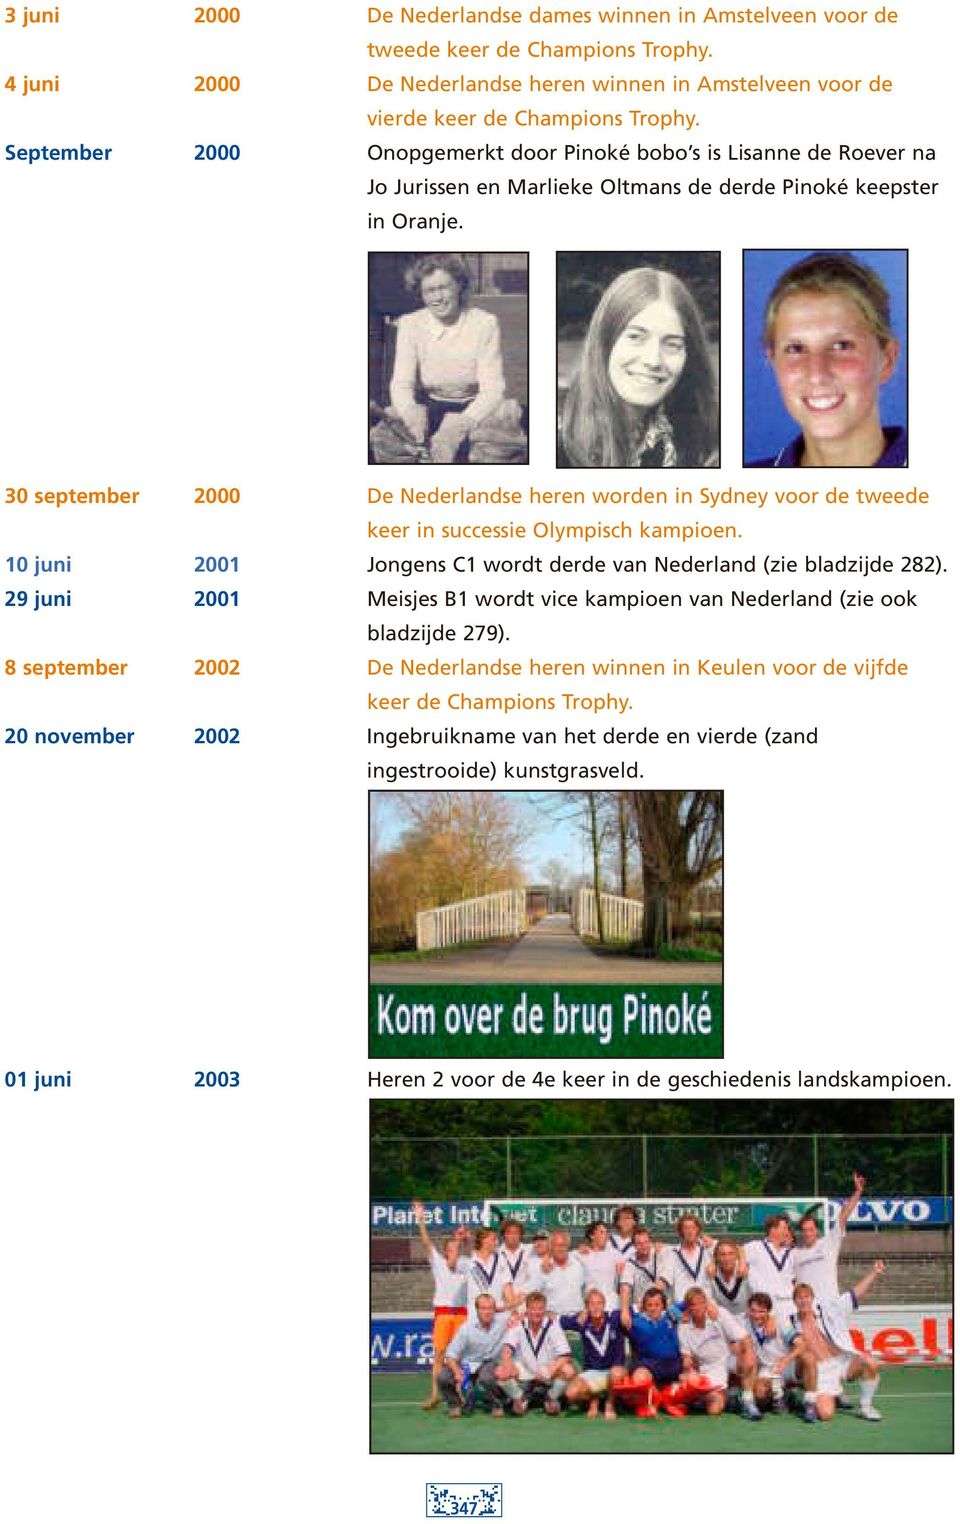 30 september 2000 De Nederlandse heren worden in Sydney voor de tweede keer in successie Olympisch kampioen. 10 juni 2001 Jongens C1 wordt derde van Nederland (zie bladzijde 282).